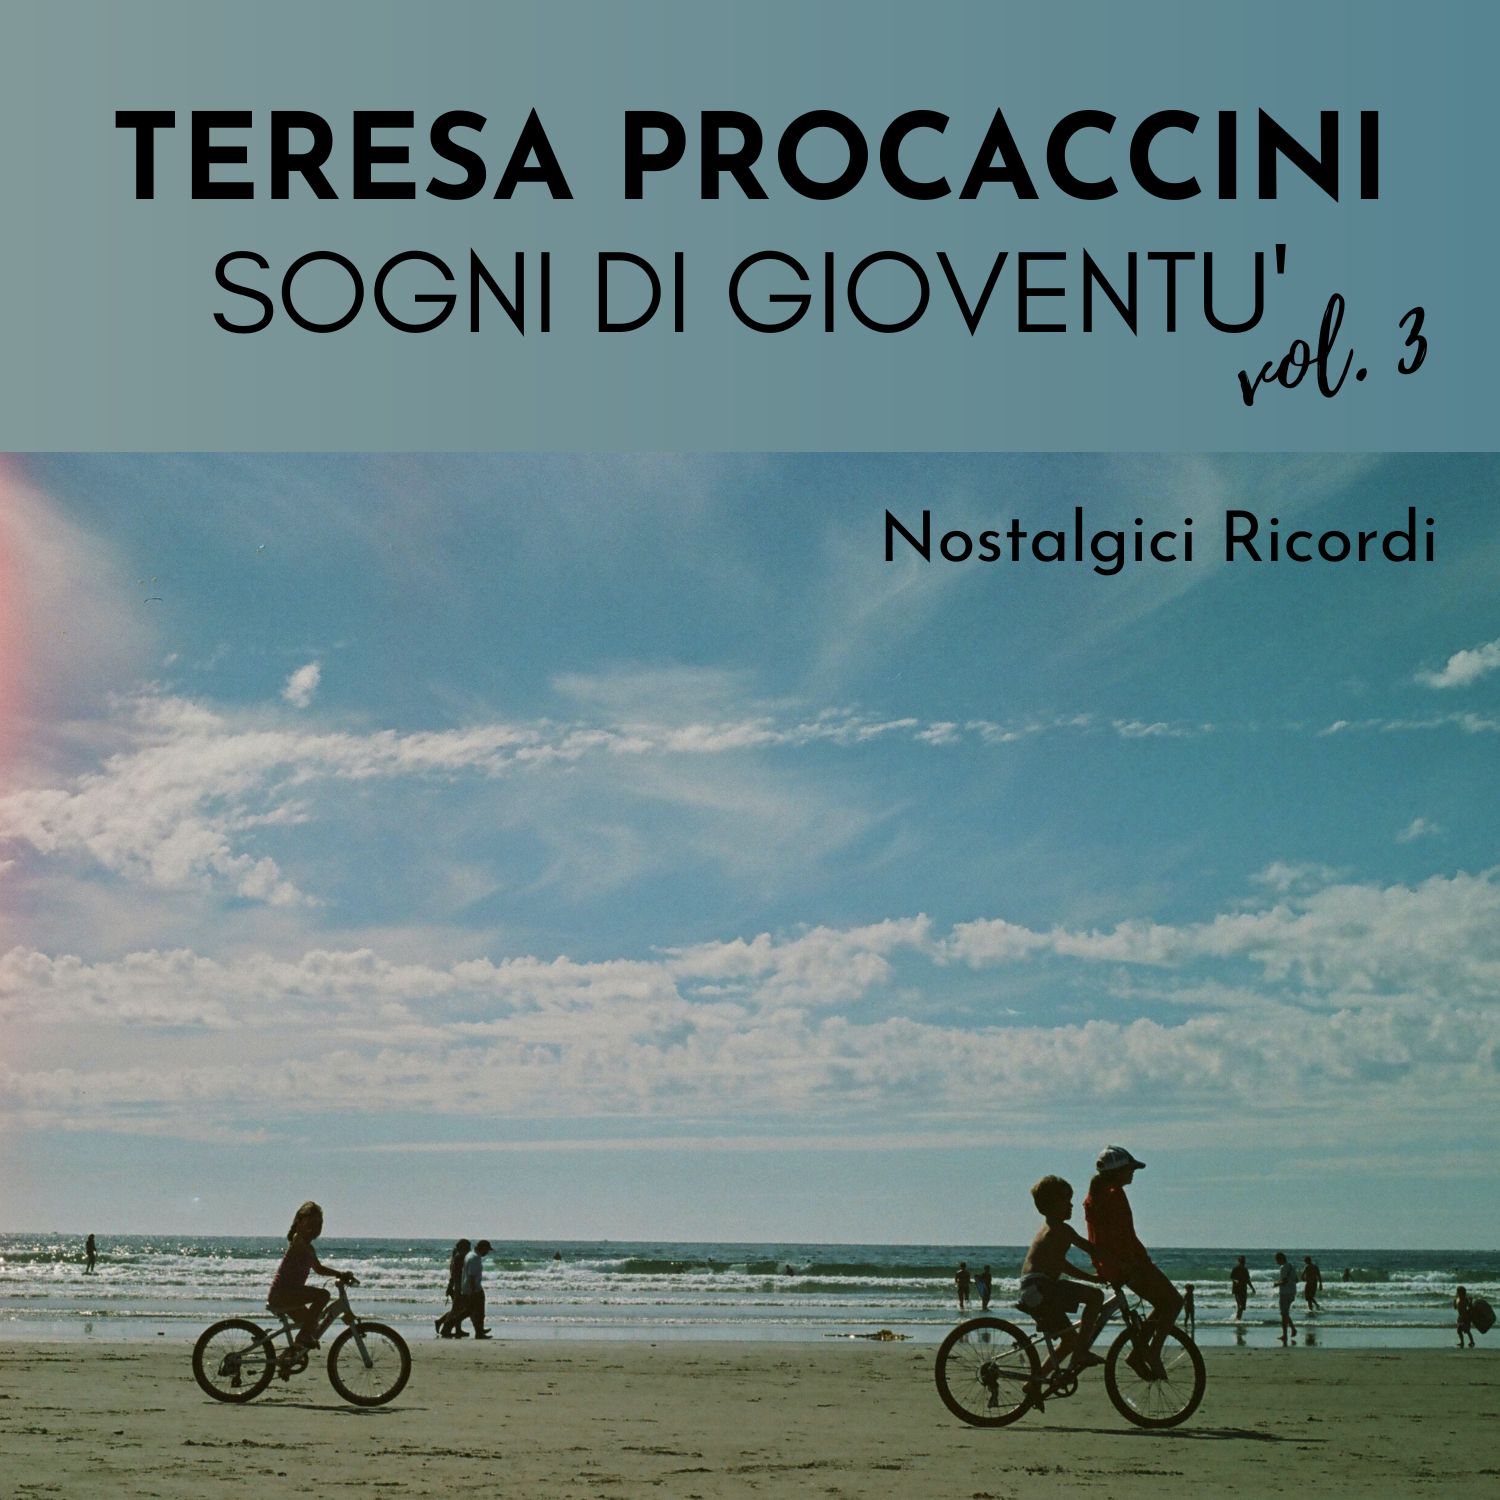 Teresa Procaccini: Sogni di gioventù Vol. 3 (Nostalgici ricordi)